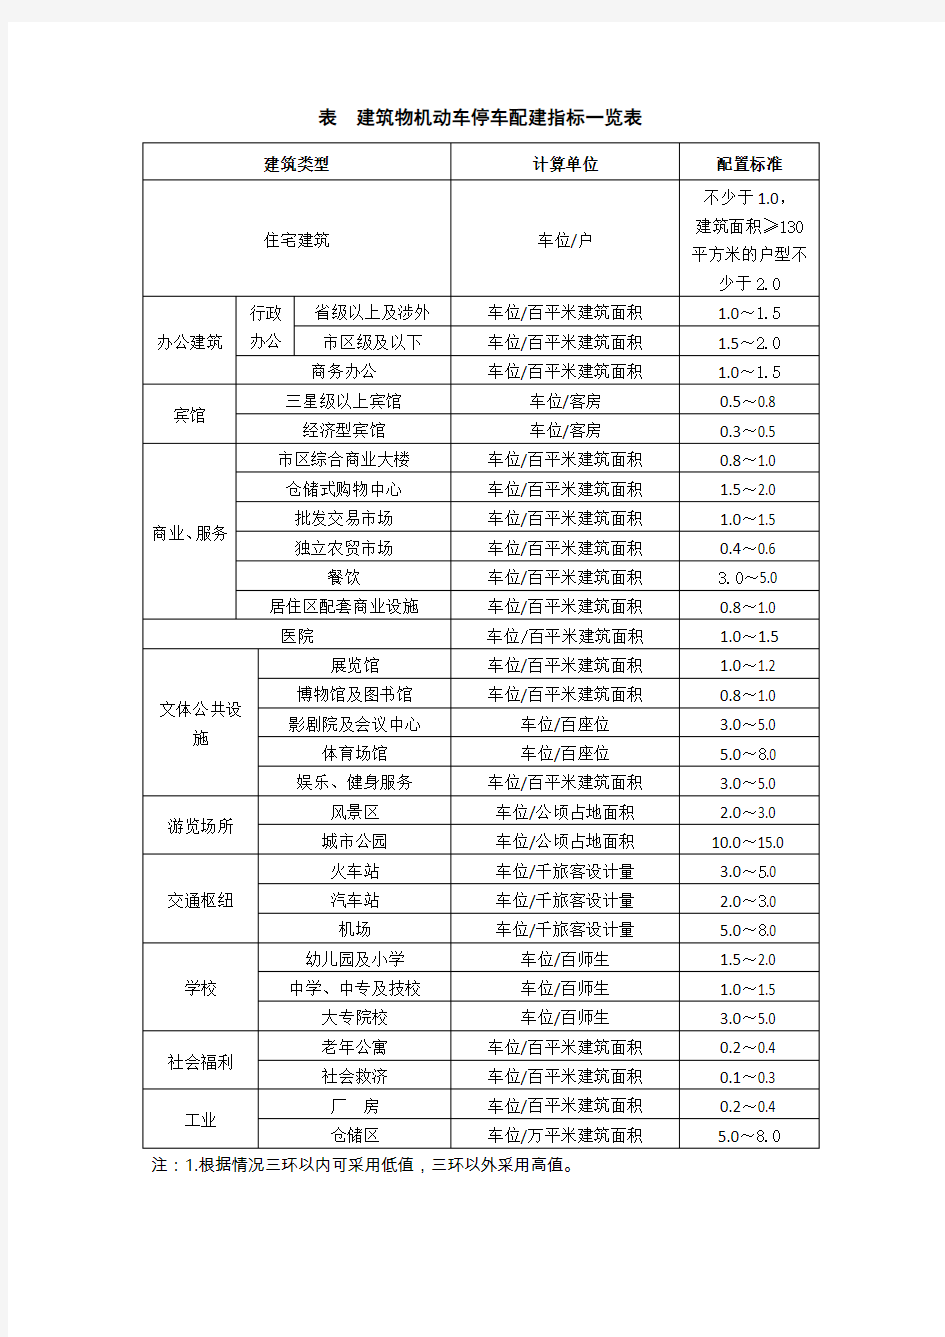 郑州市建筑物机动车及非机动车停车配建指标一览表